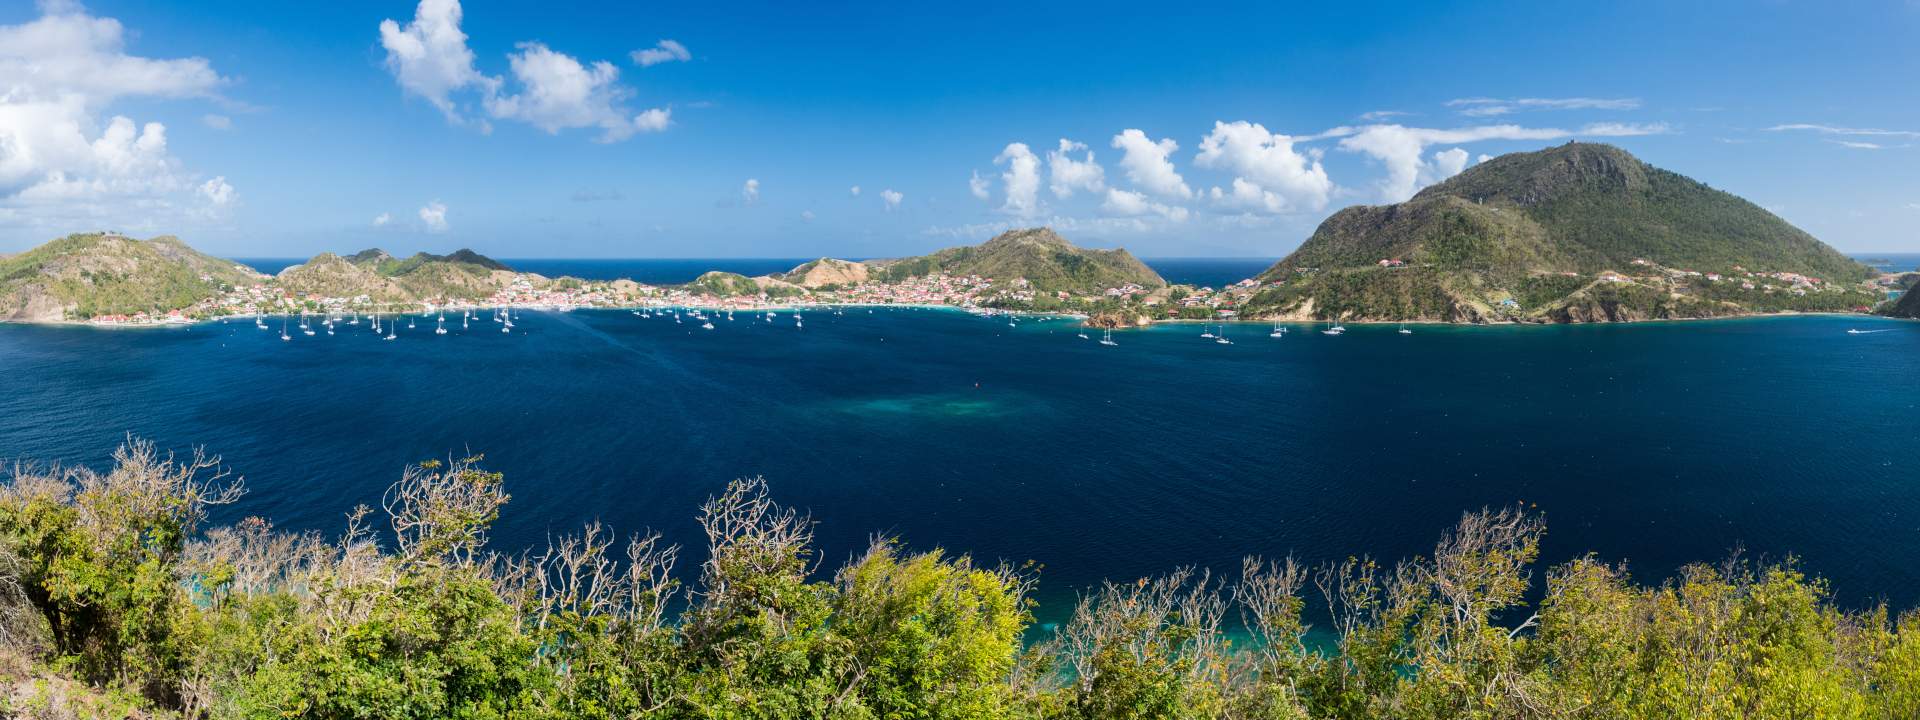 Découvrez les plus belles îles des Antilles en Saba 50 avec équipage